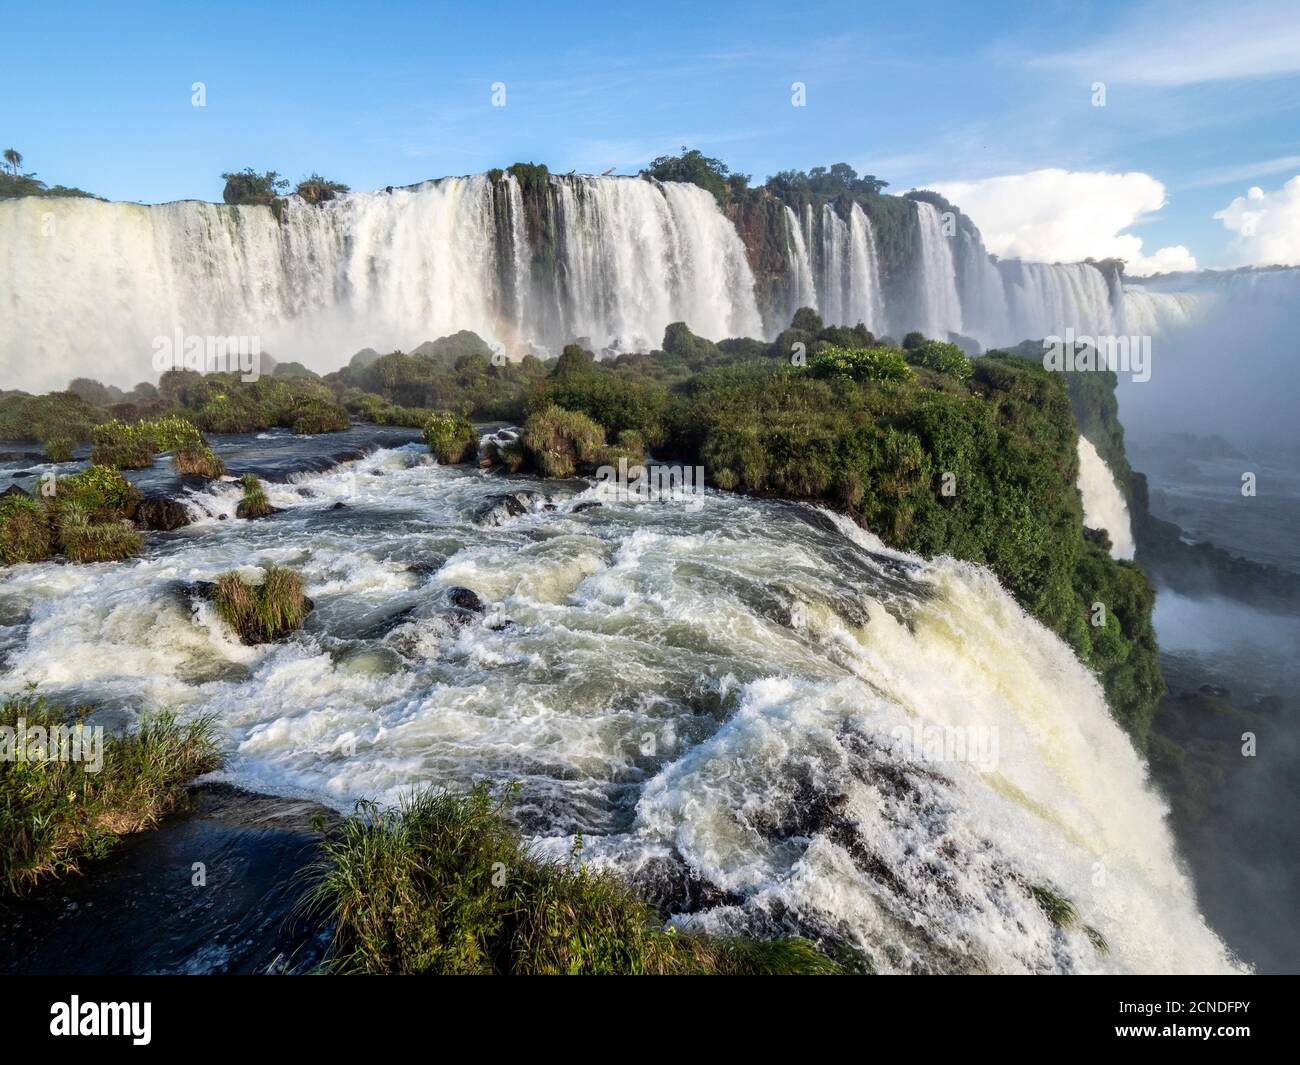 Vue sur les chutes d'Iguaçu (Cataratas do Iguaçu), site classé au patrimoine mondial de l'UNESCO, depuis le côté brésilien, Parana, Brésil Banque D'Images